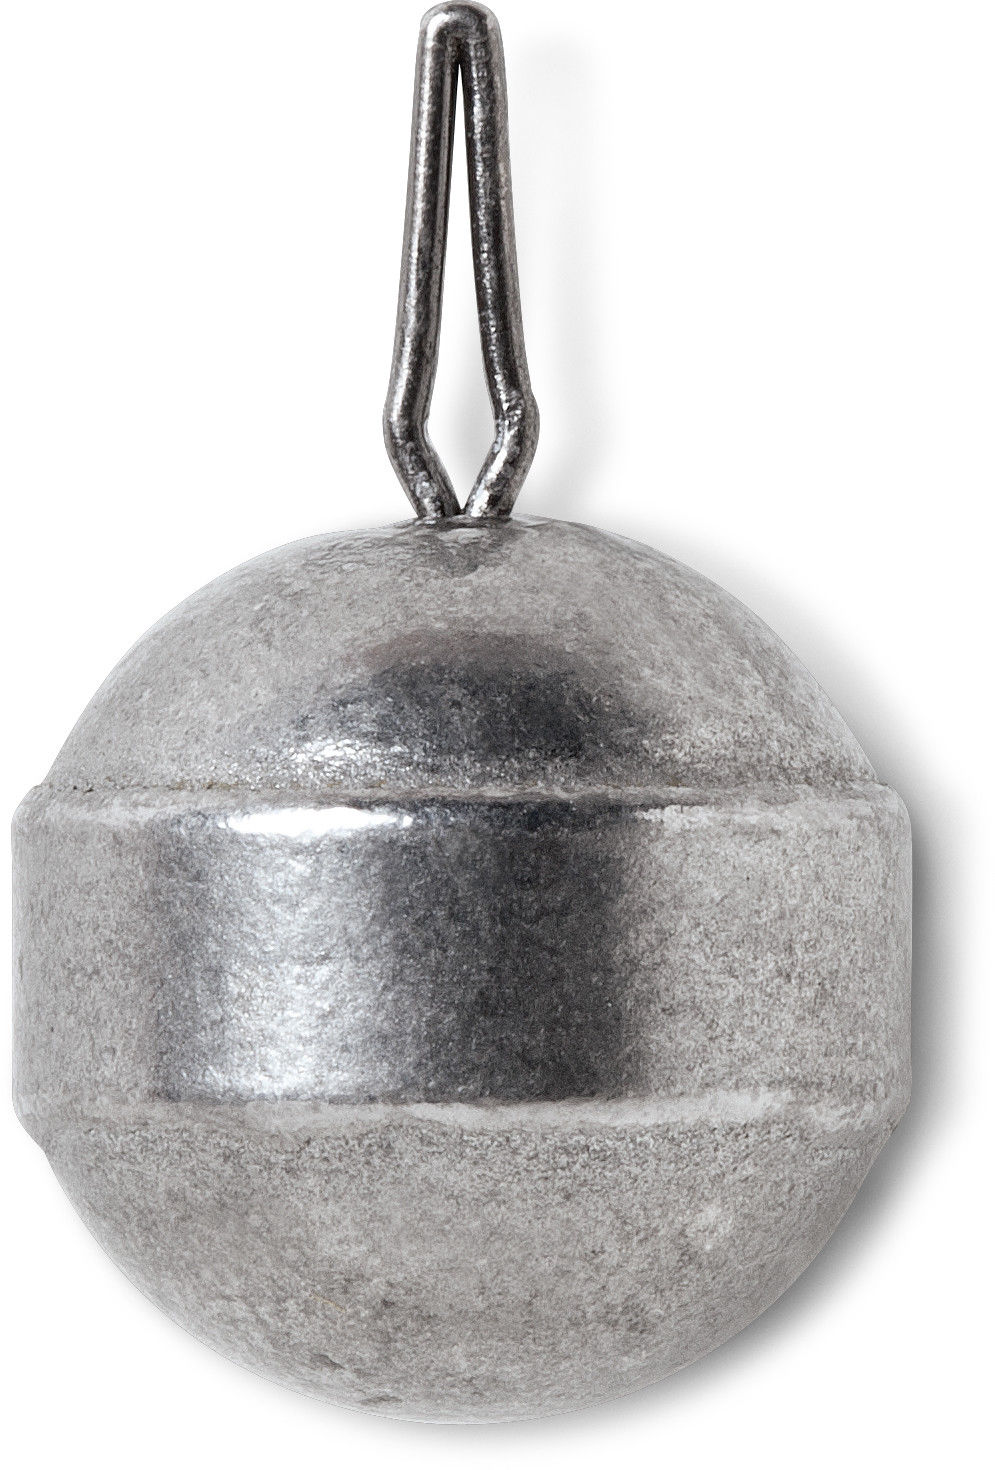 VMC Tungsten Drop Shot Ball Weight Natural 1/8oz